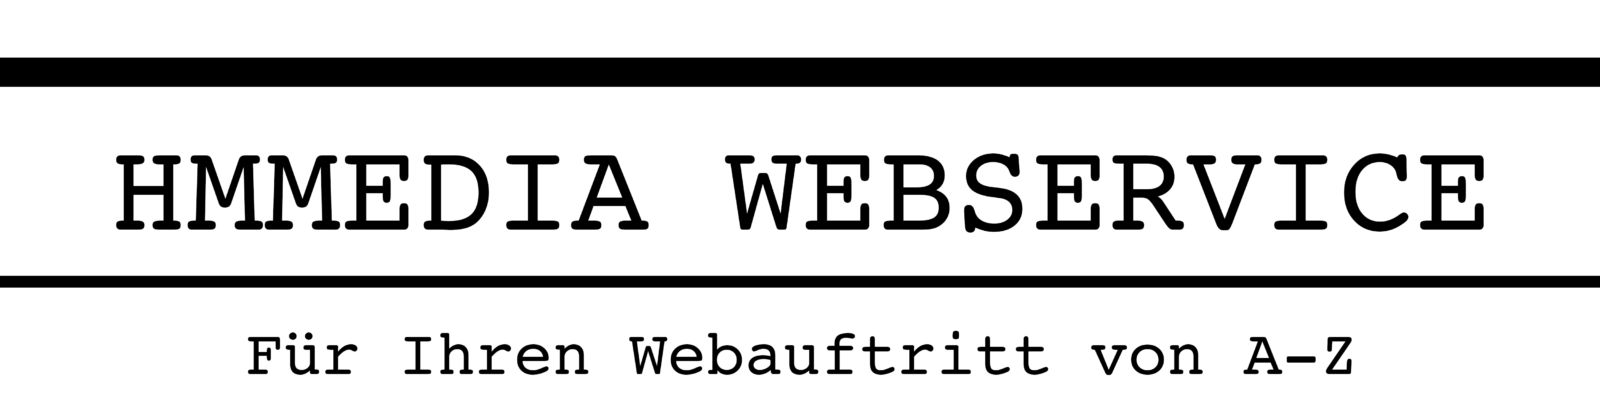 hmmedia_Webservice_Logo Kopie